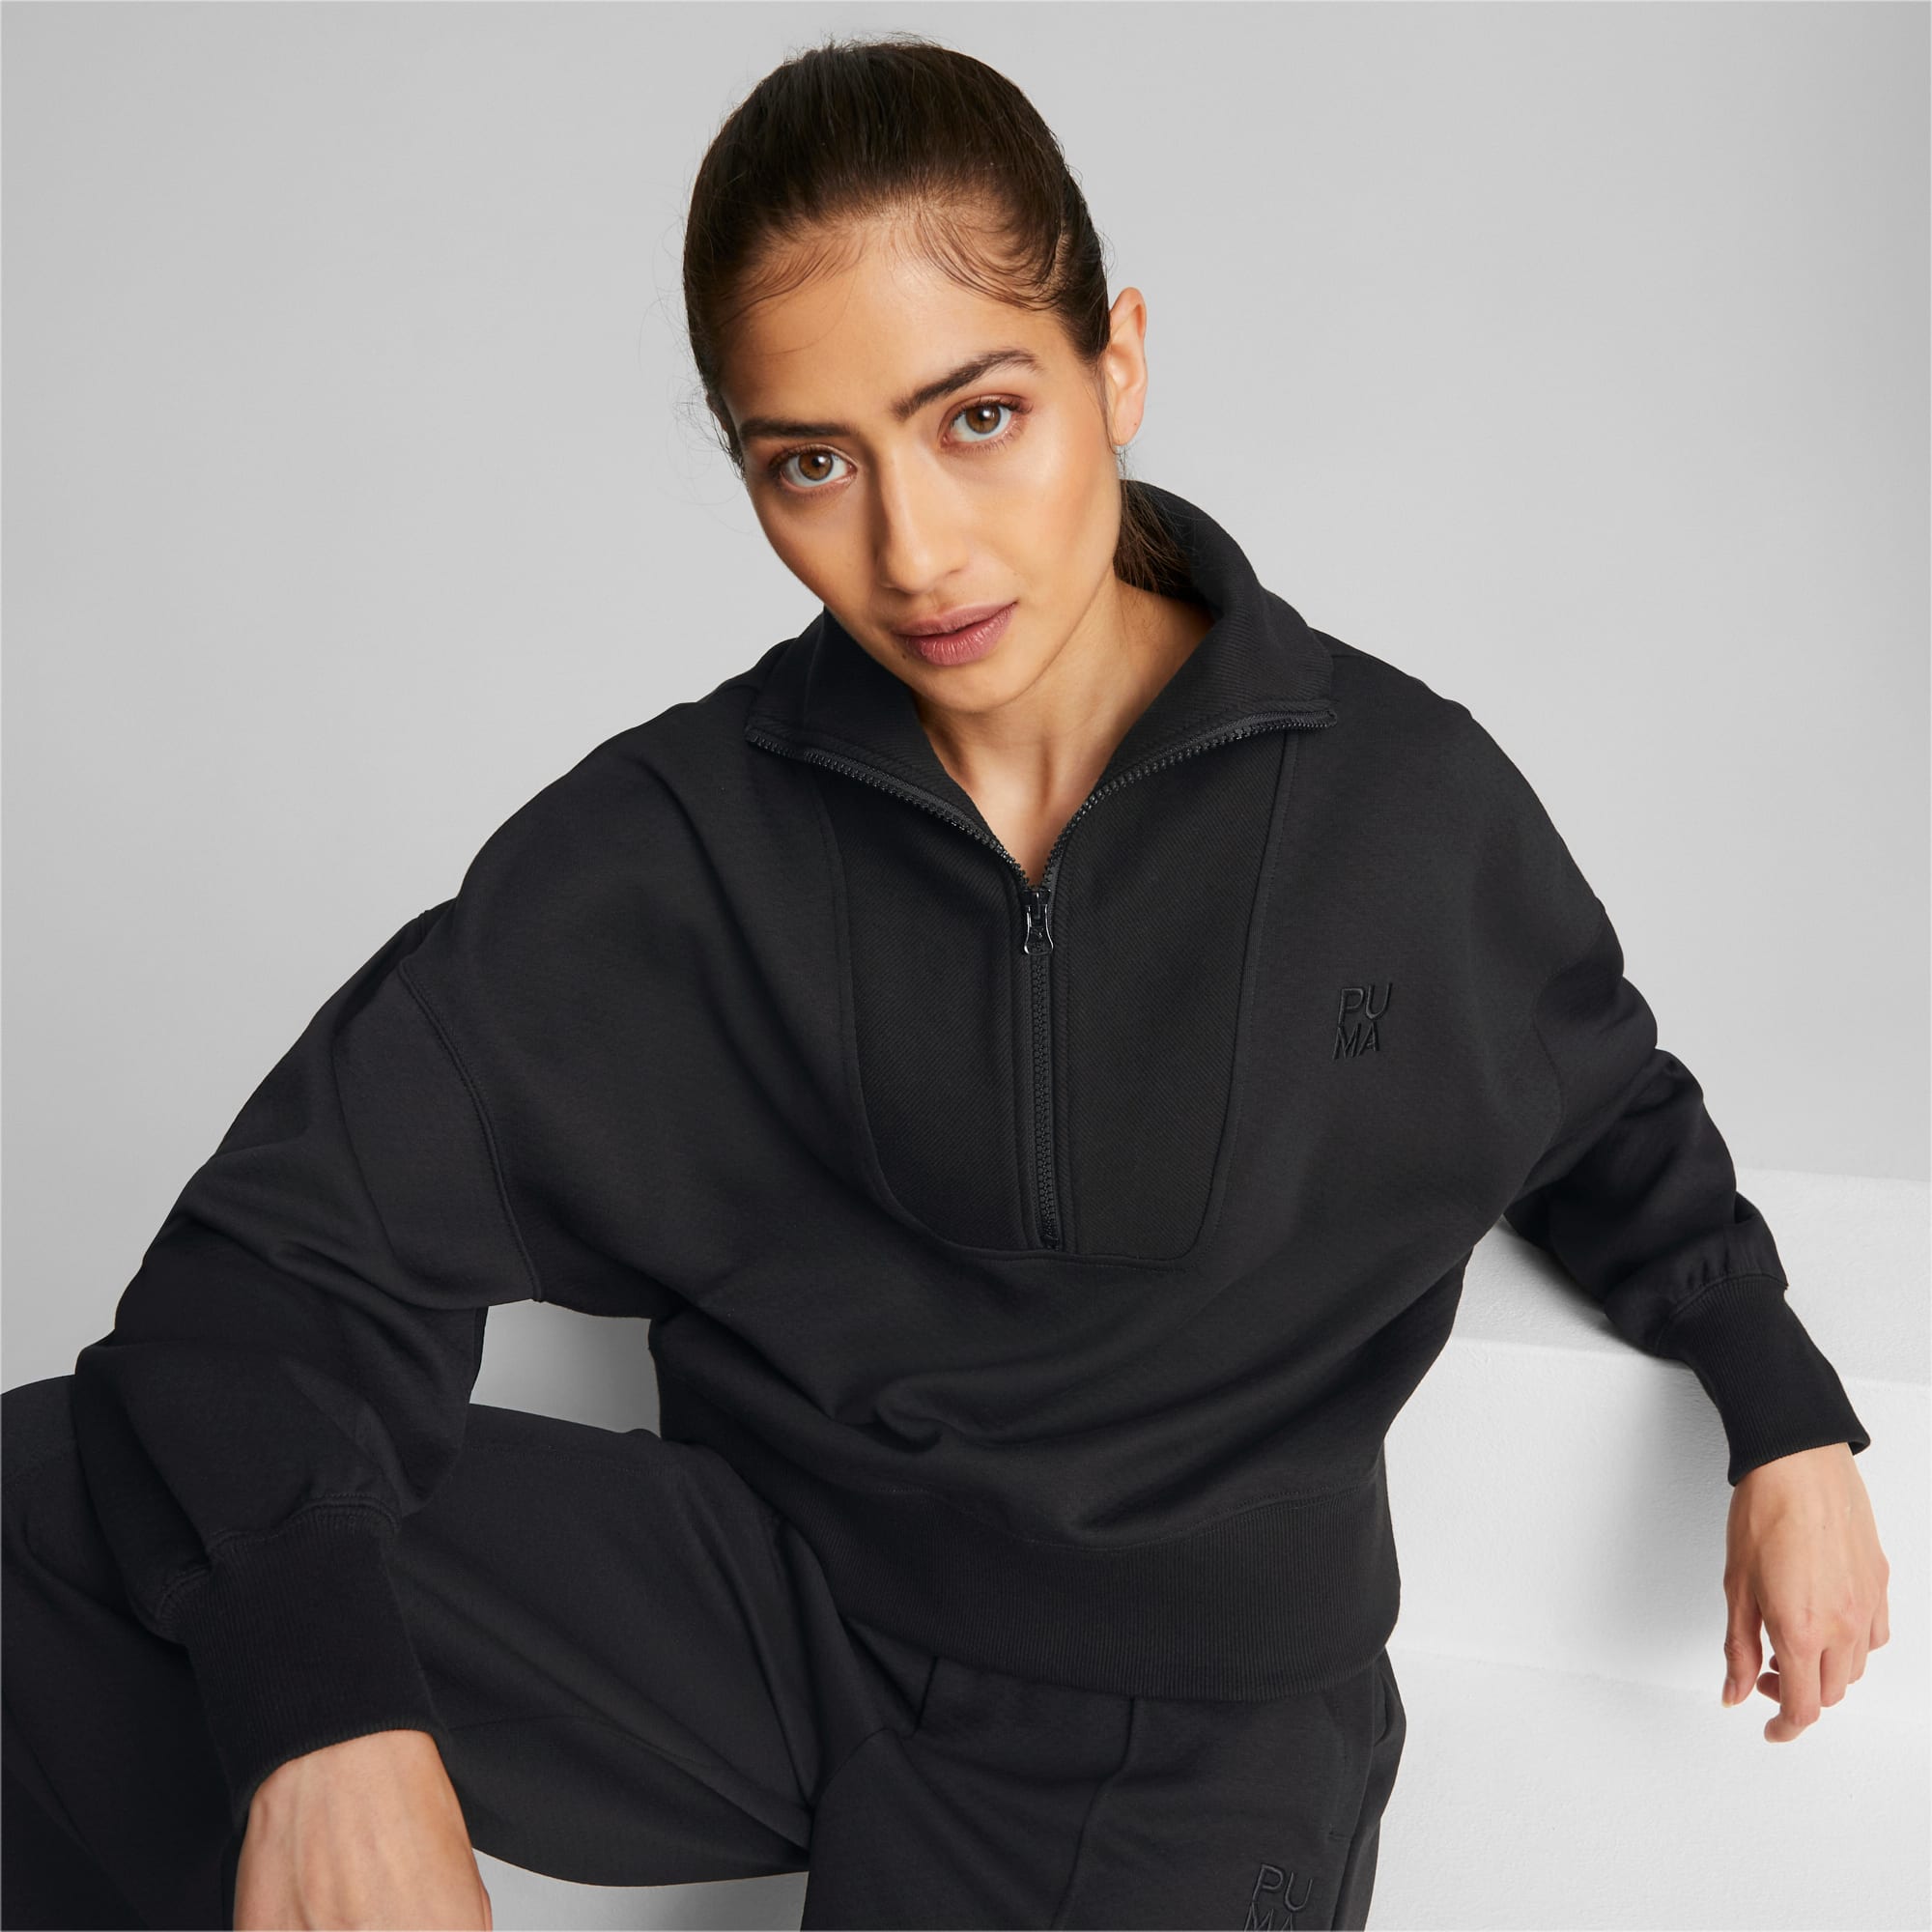 Puma HER Women's Quarter Zip Sweatshirt - Free Shipping